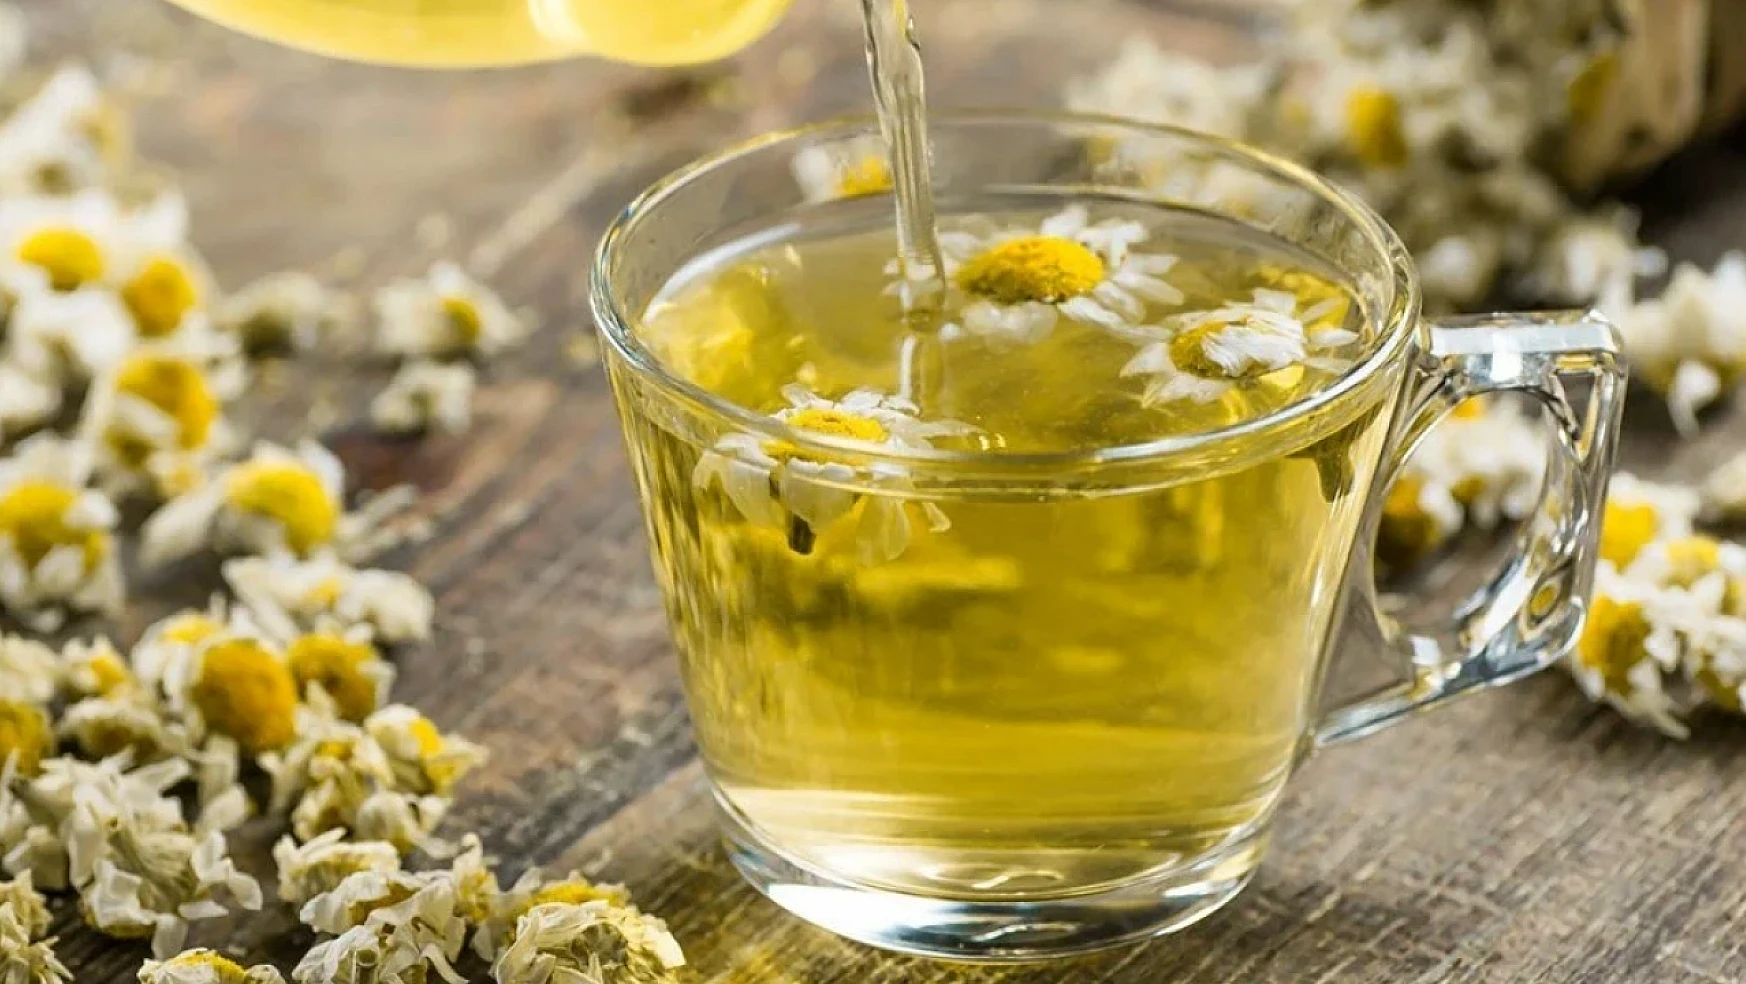 Papatya çayının sağlığa faydaları nelerdir?